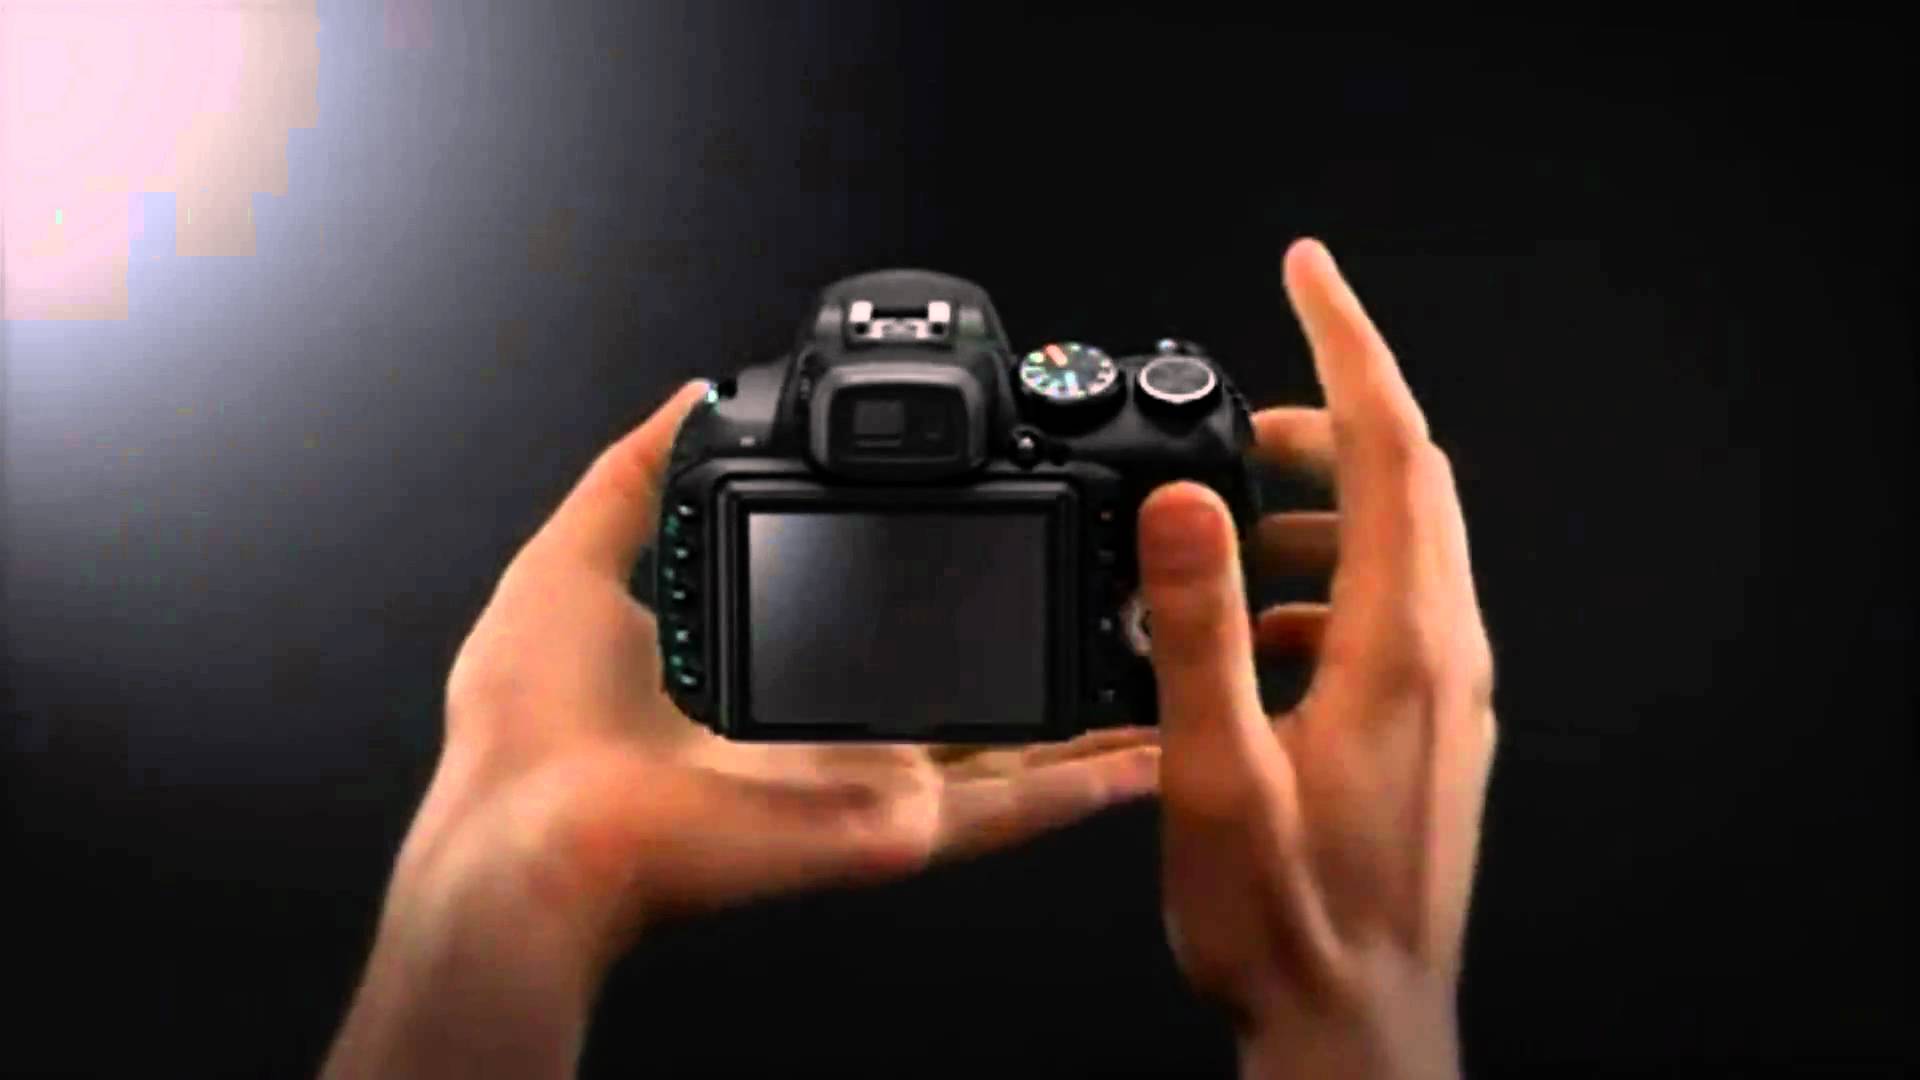 Fuji FinePix HS20EXR 16 MegaPixel Digital Camera Promotional Video